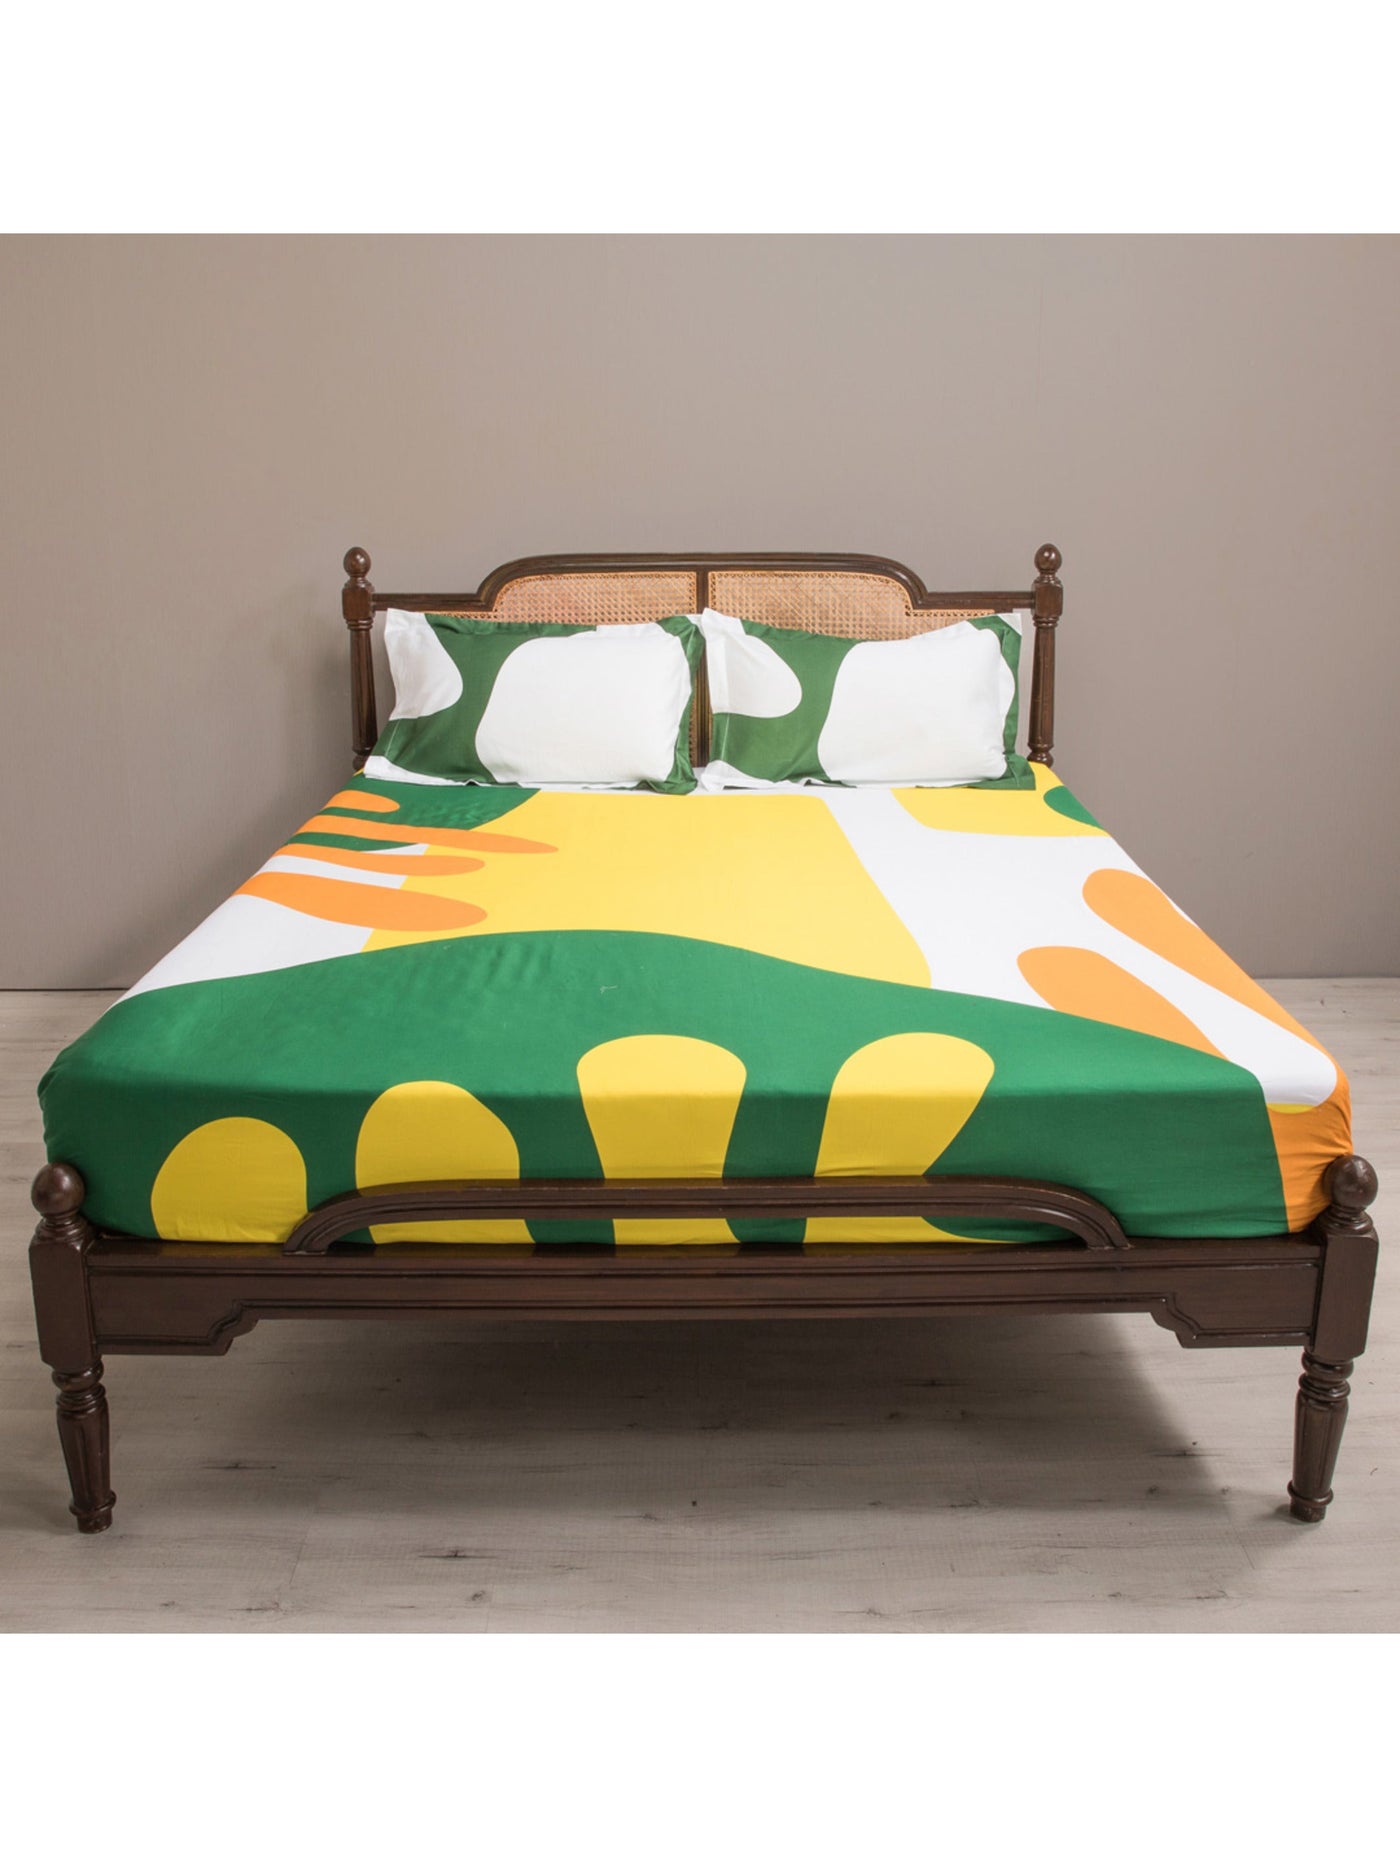 The Matisse Meets Memphis Bedsheet In Yellow & Green Copy